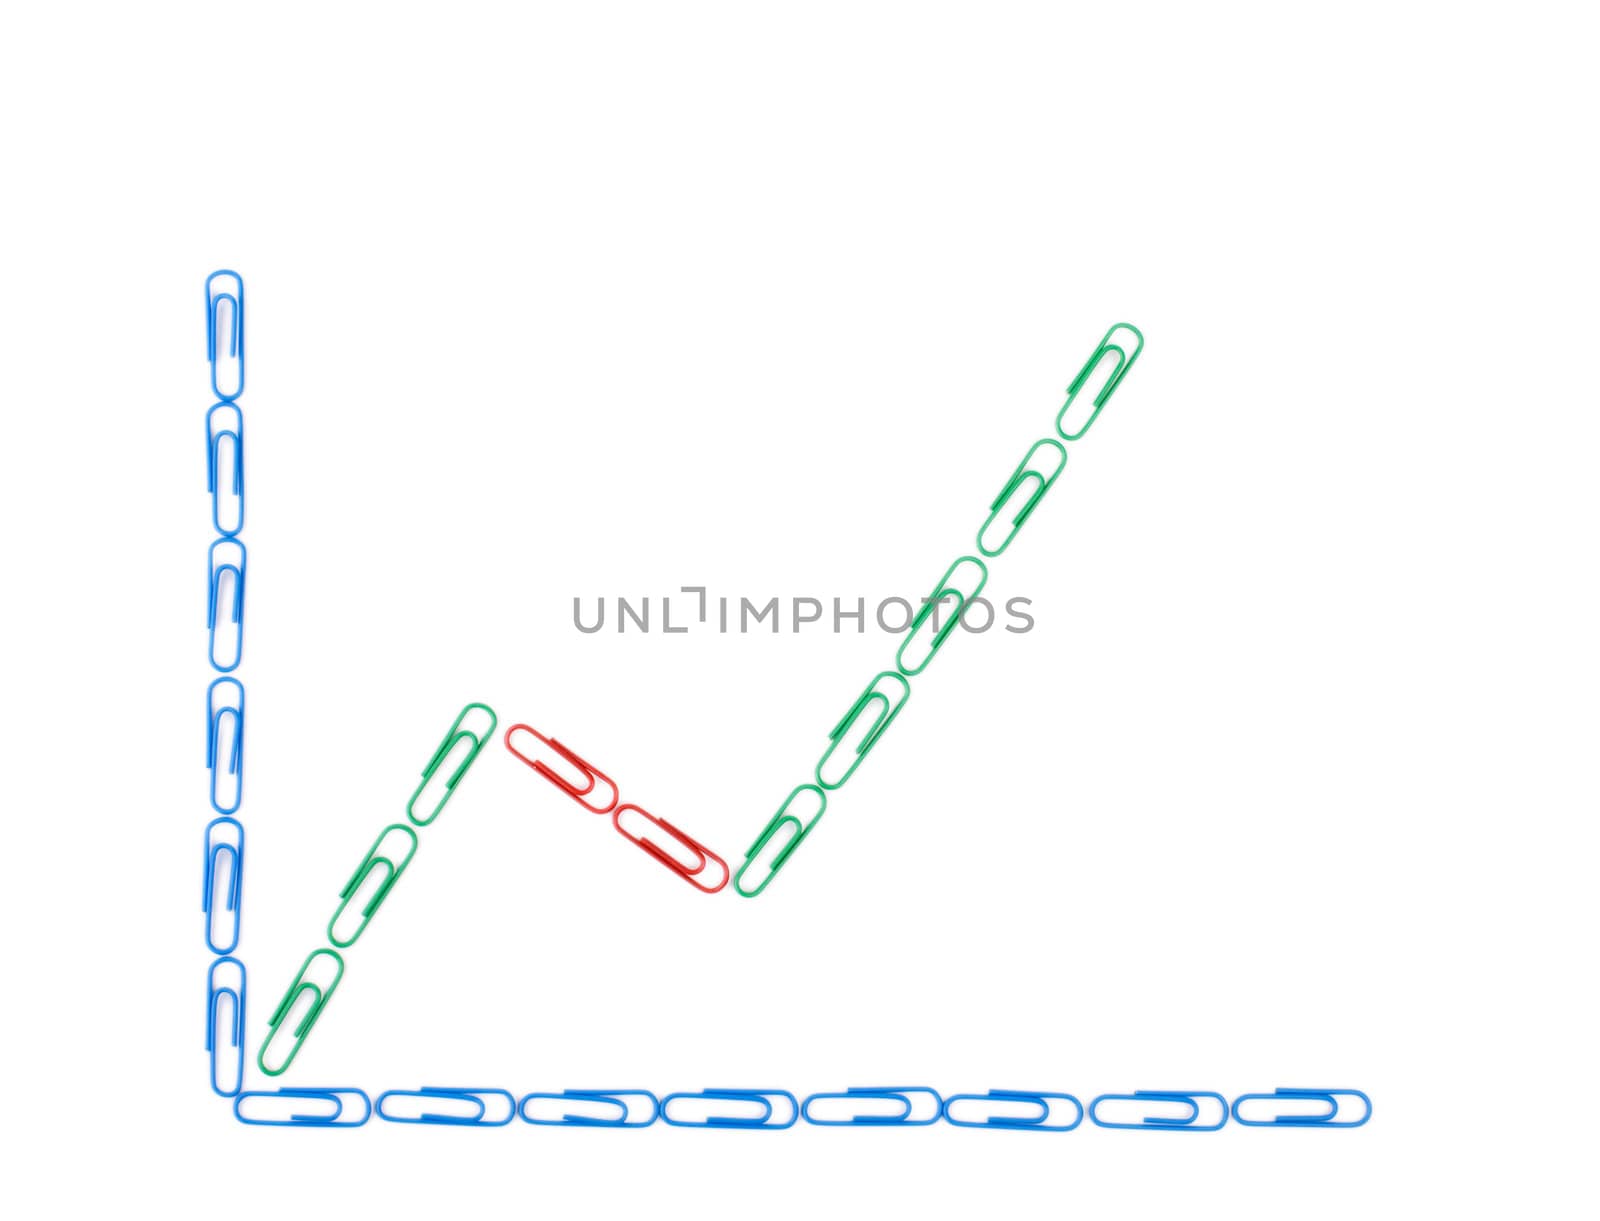 Paper clips Economic diagram by rozhenyuk